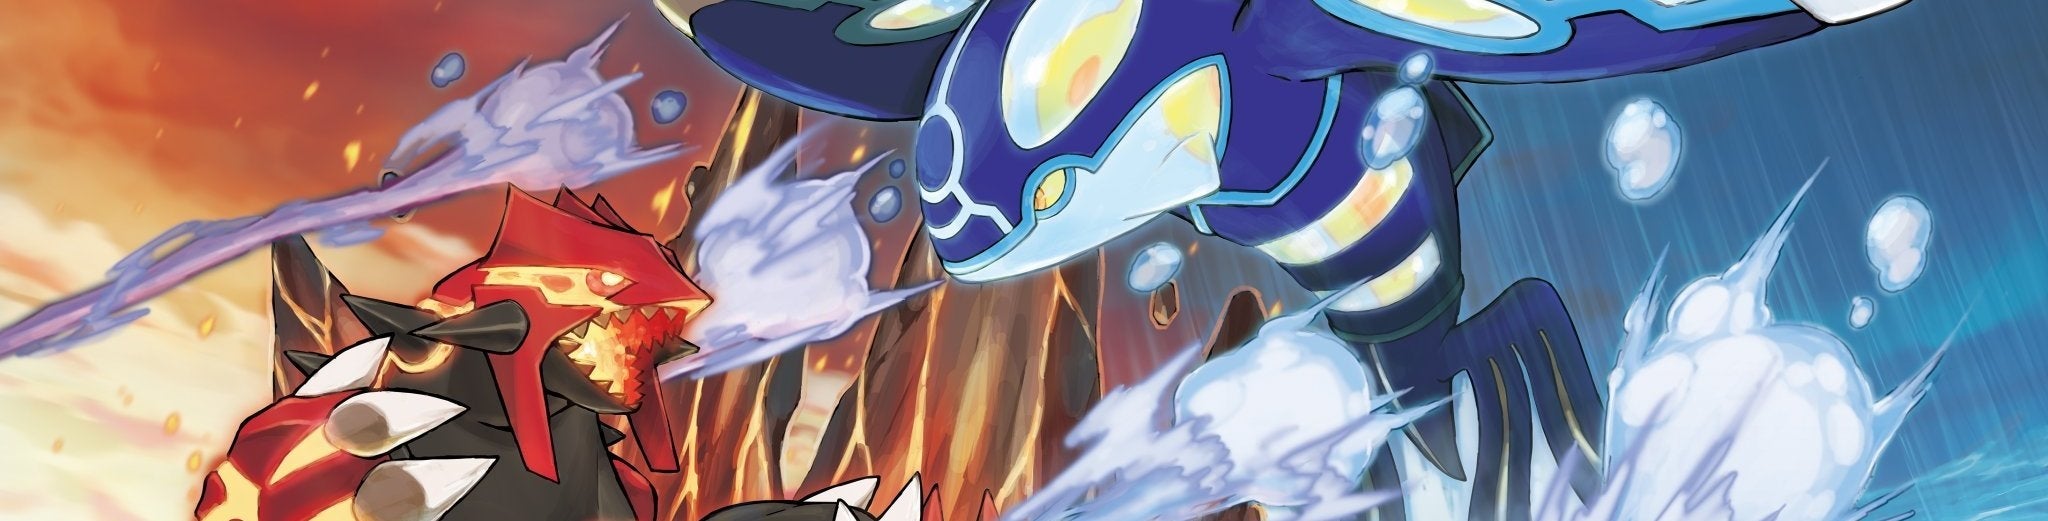 Obrazki dla Pokemon Omega Ruby i Alpha Sapphire - Recenzja